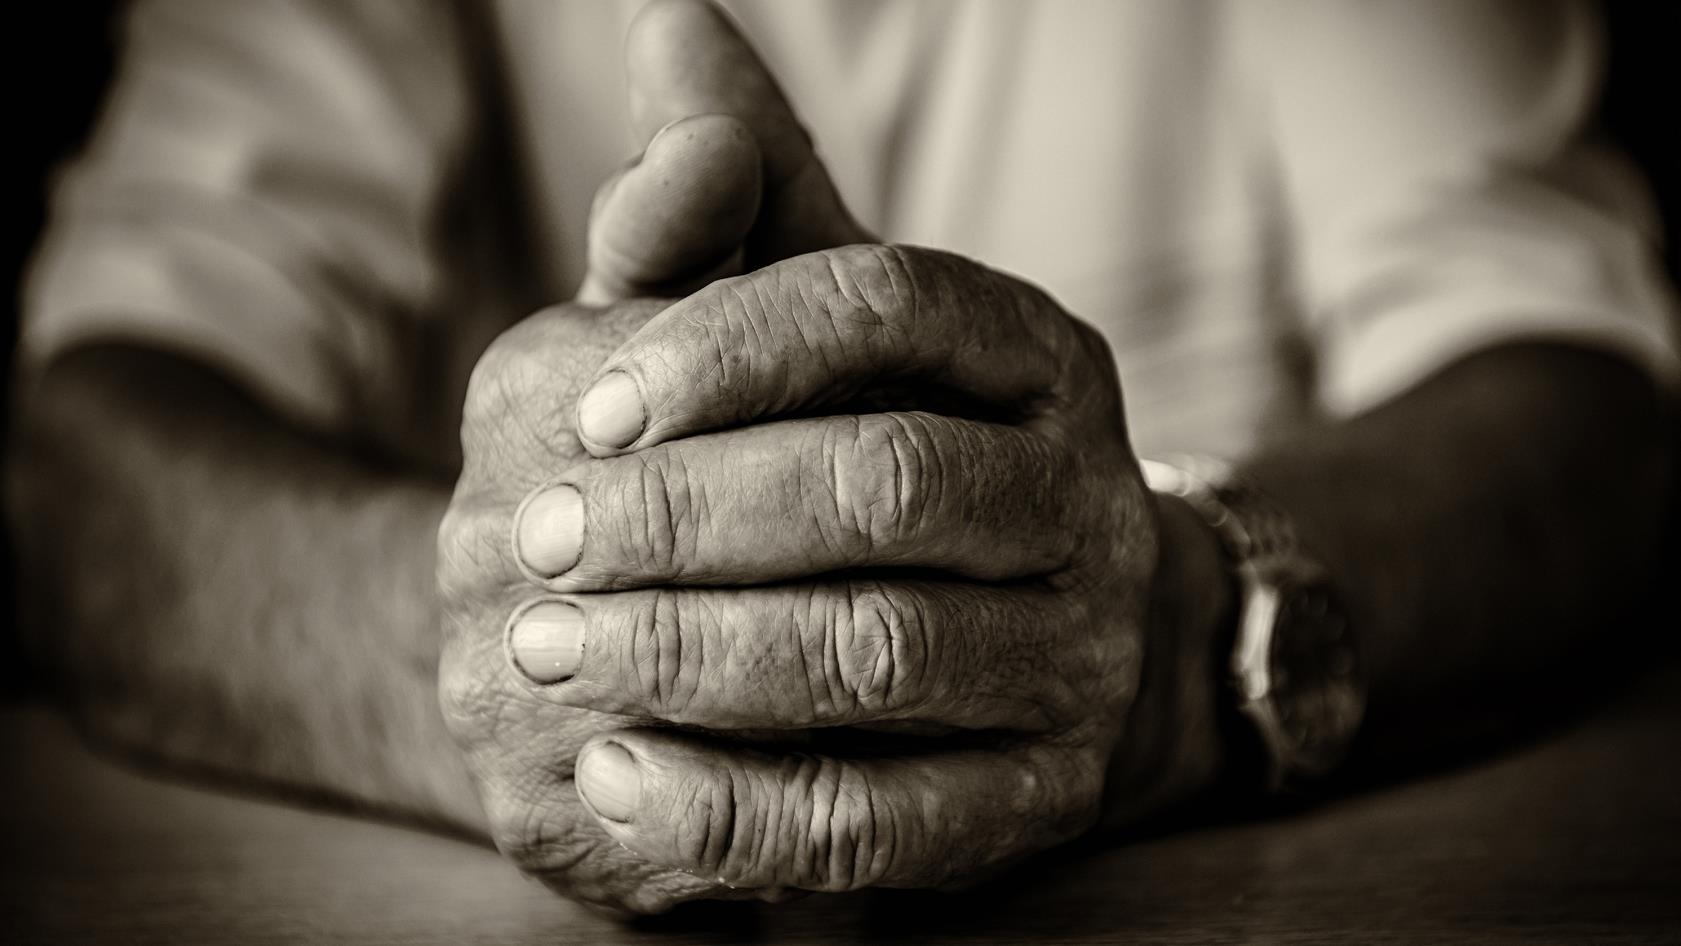 En svartvit bild på en gammal mans händer. Den högra handen håller om den vänstra. Händerna vilar mot ett bord.